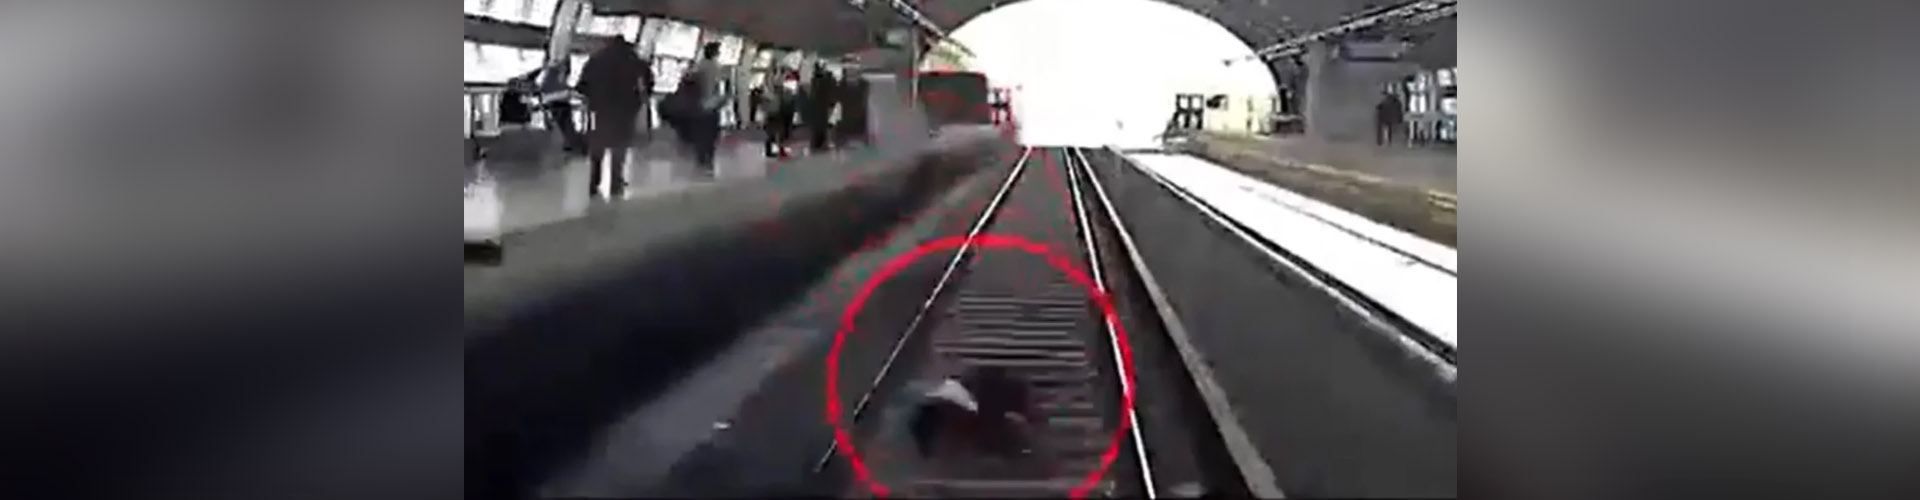 (VIDEO) Se desmayó, cayó a vías del tren, le pasó por encima y se salvó